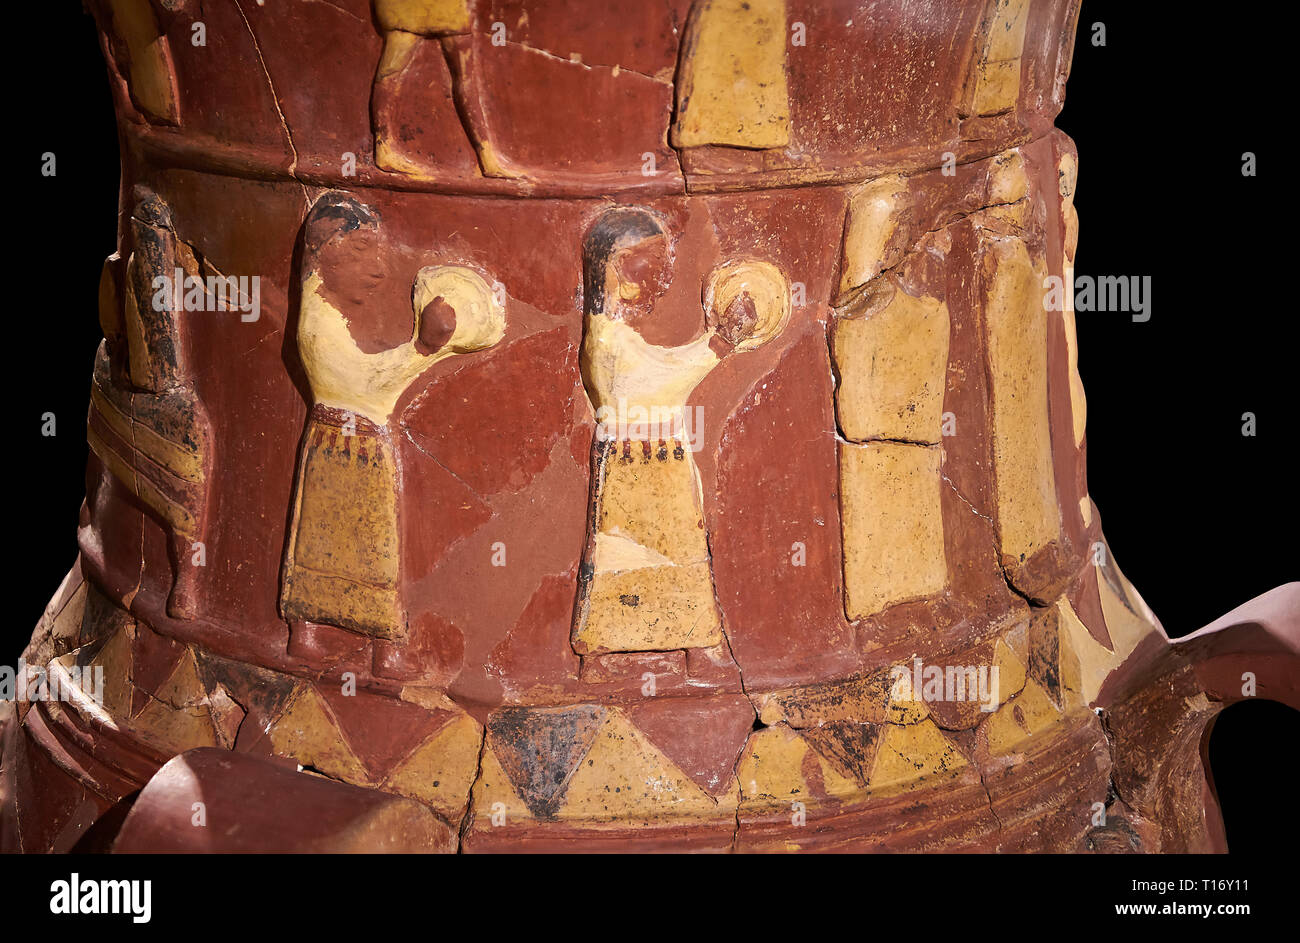 Nahaufnahme der Inandik Hethiter Relief dekoriert Kult trankopfers Vase mit Frauen Entlastung Zahlen farbig in Creme, Rot und Schwarz spielen instr eingerichtet Stockfoto